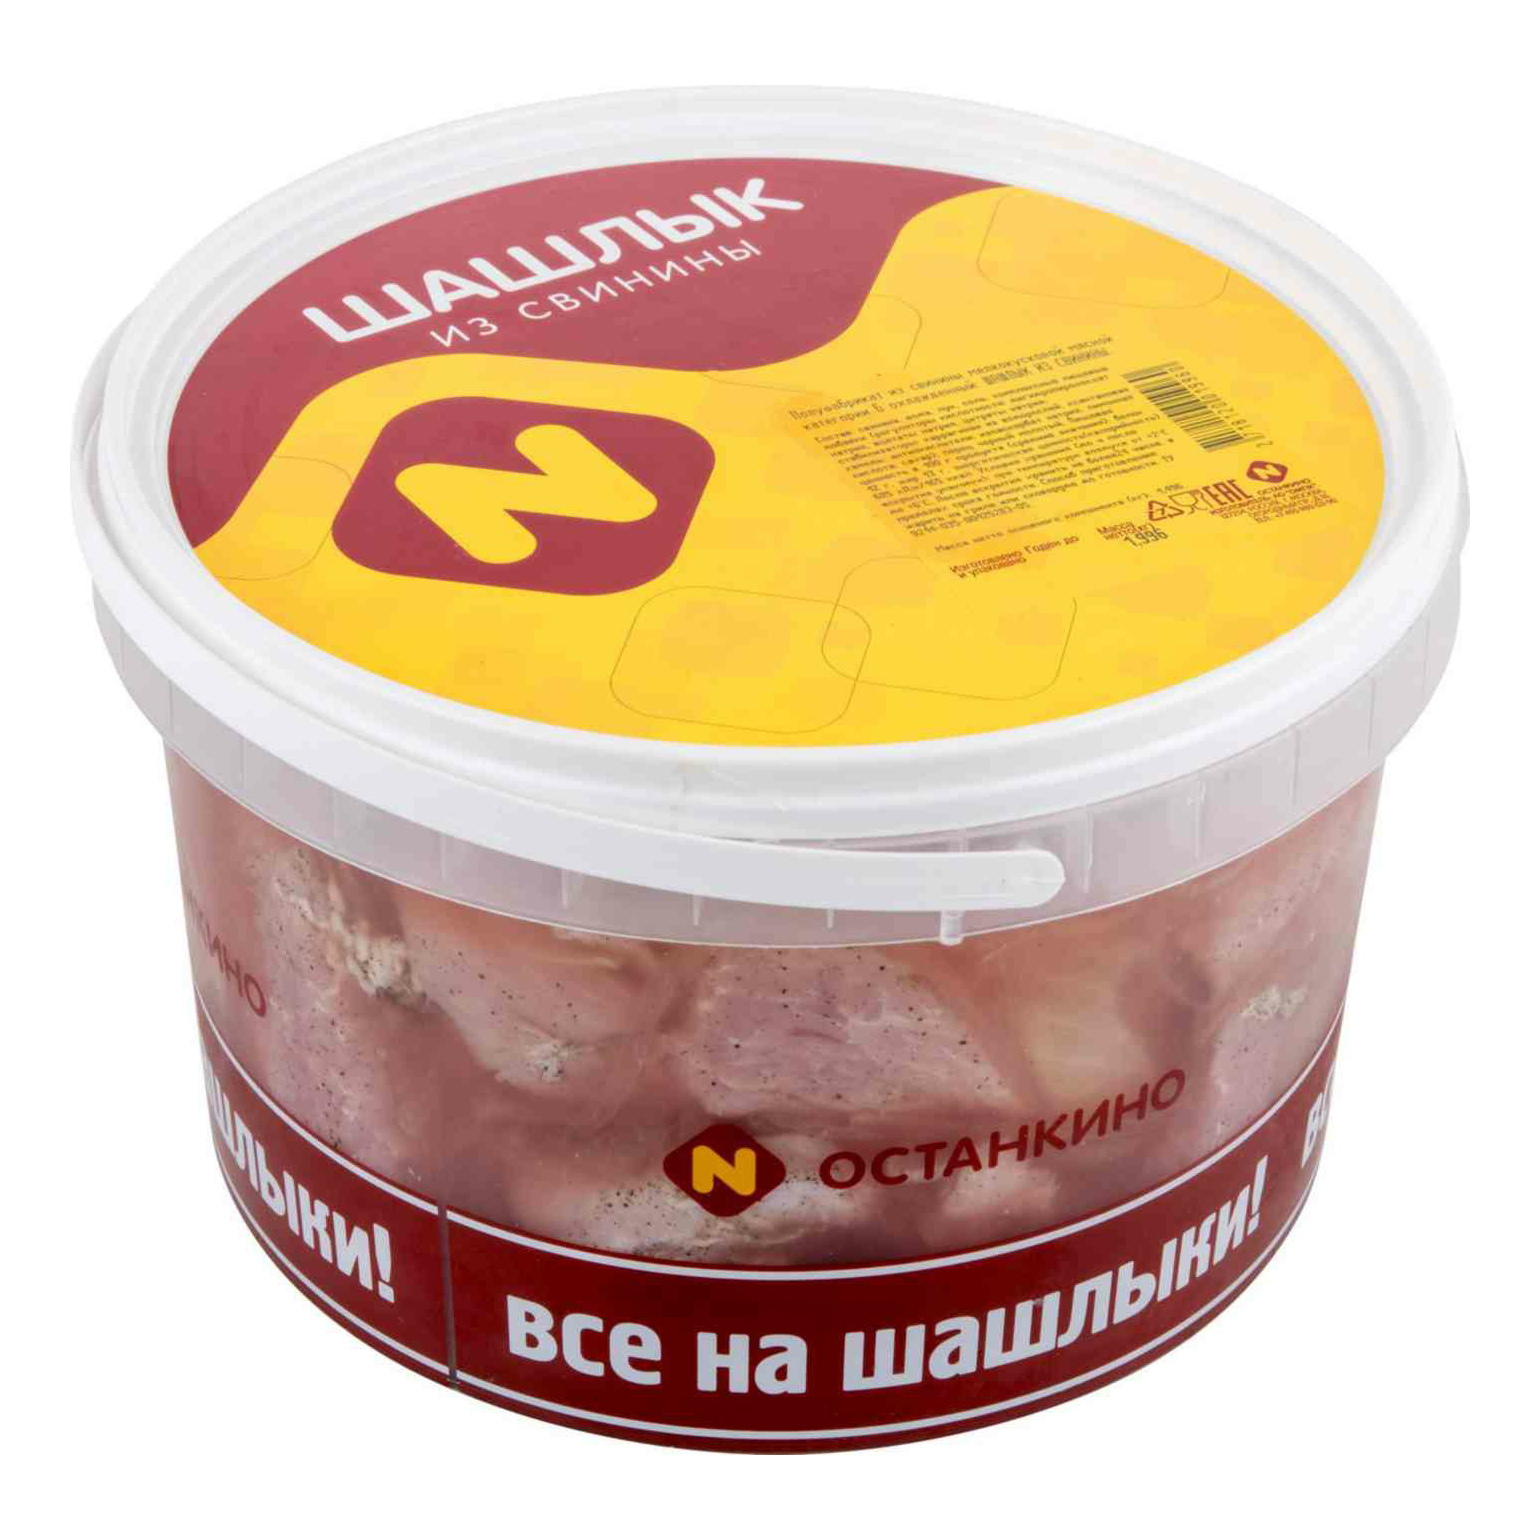 Шашлык из свинины Останкино охлажденный +-2,05 кг